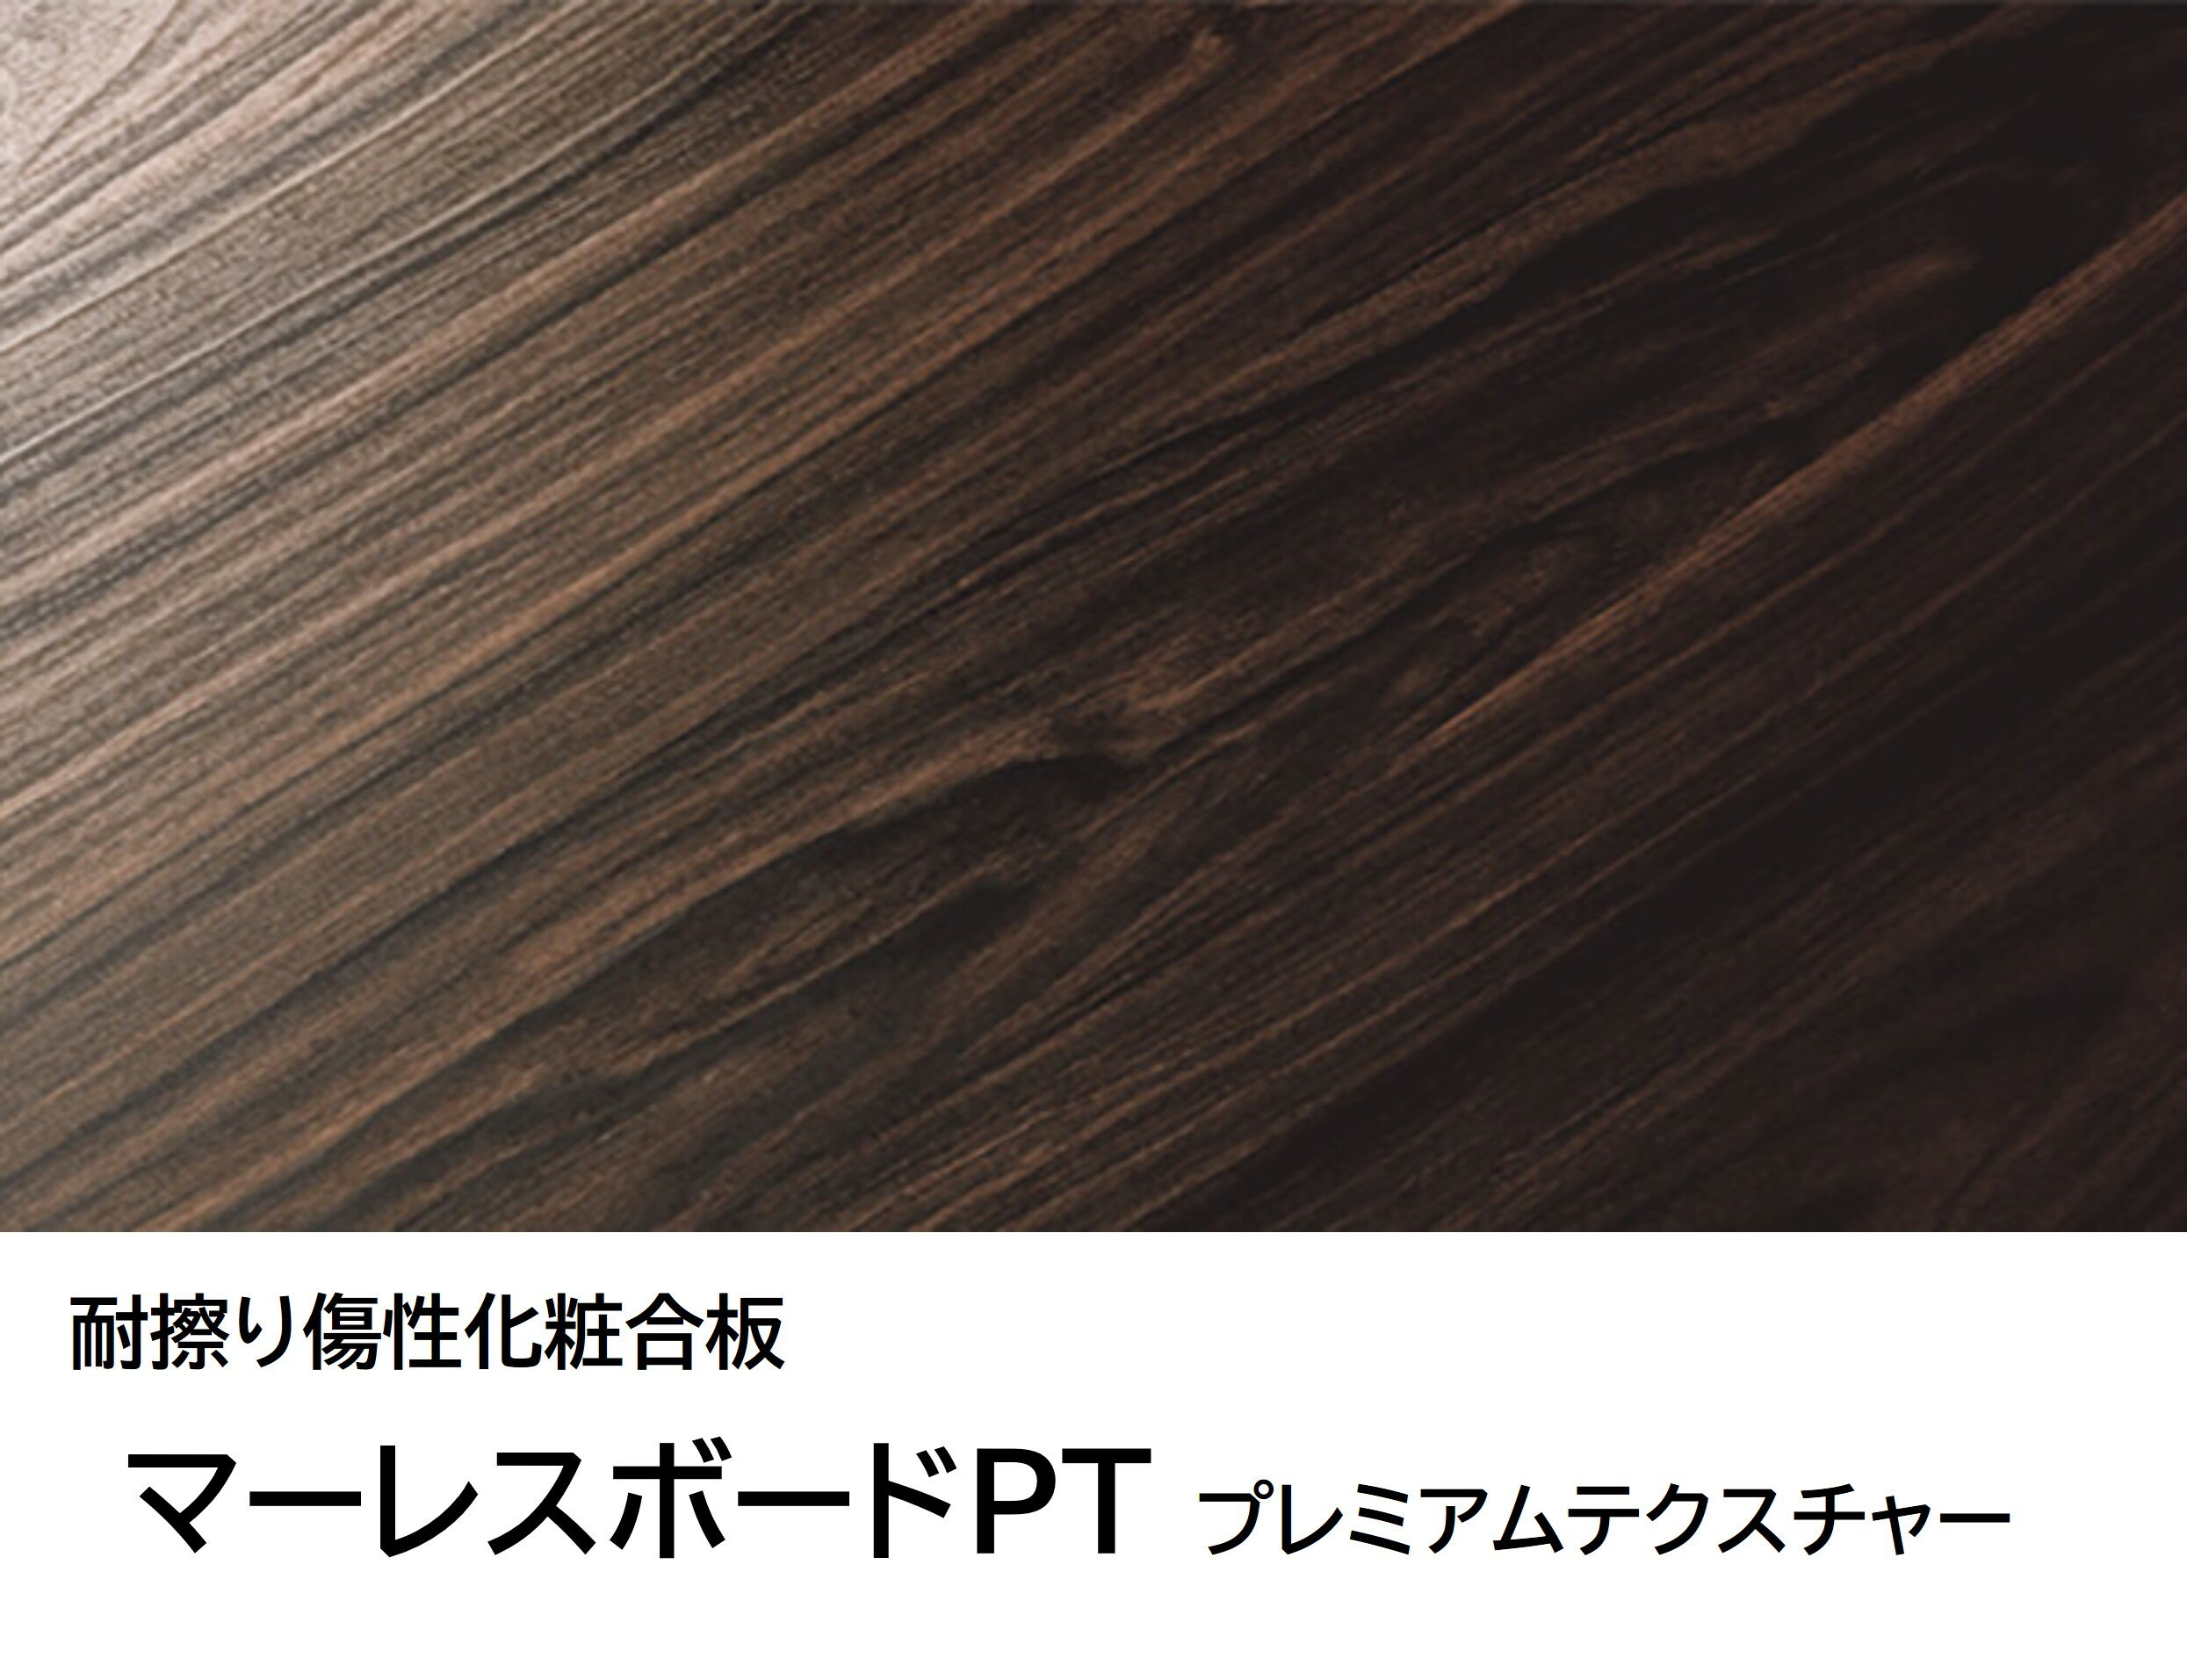 マーレスボードPT プレミアムテクスチャー BBQ2057 3×6 2.5mm 910×1820mm 木目 オーク 柾目 ポリ合板 化粧合板 2